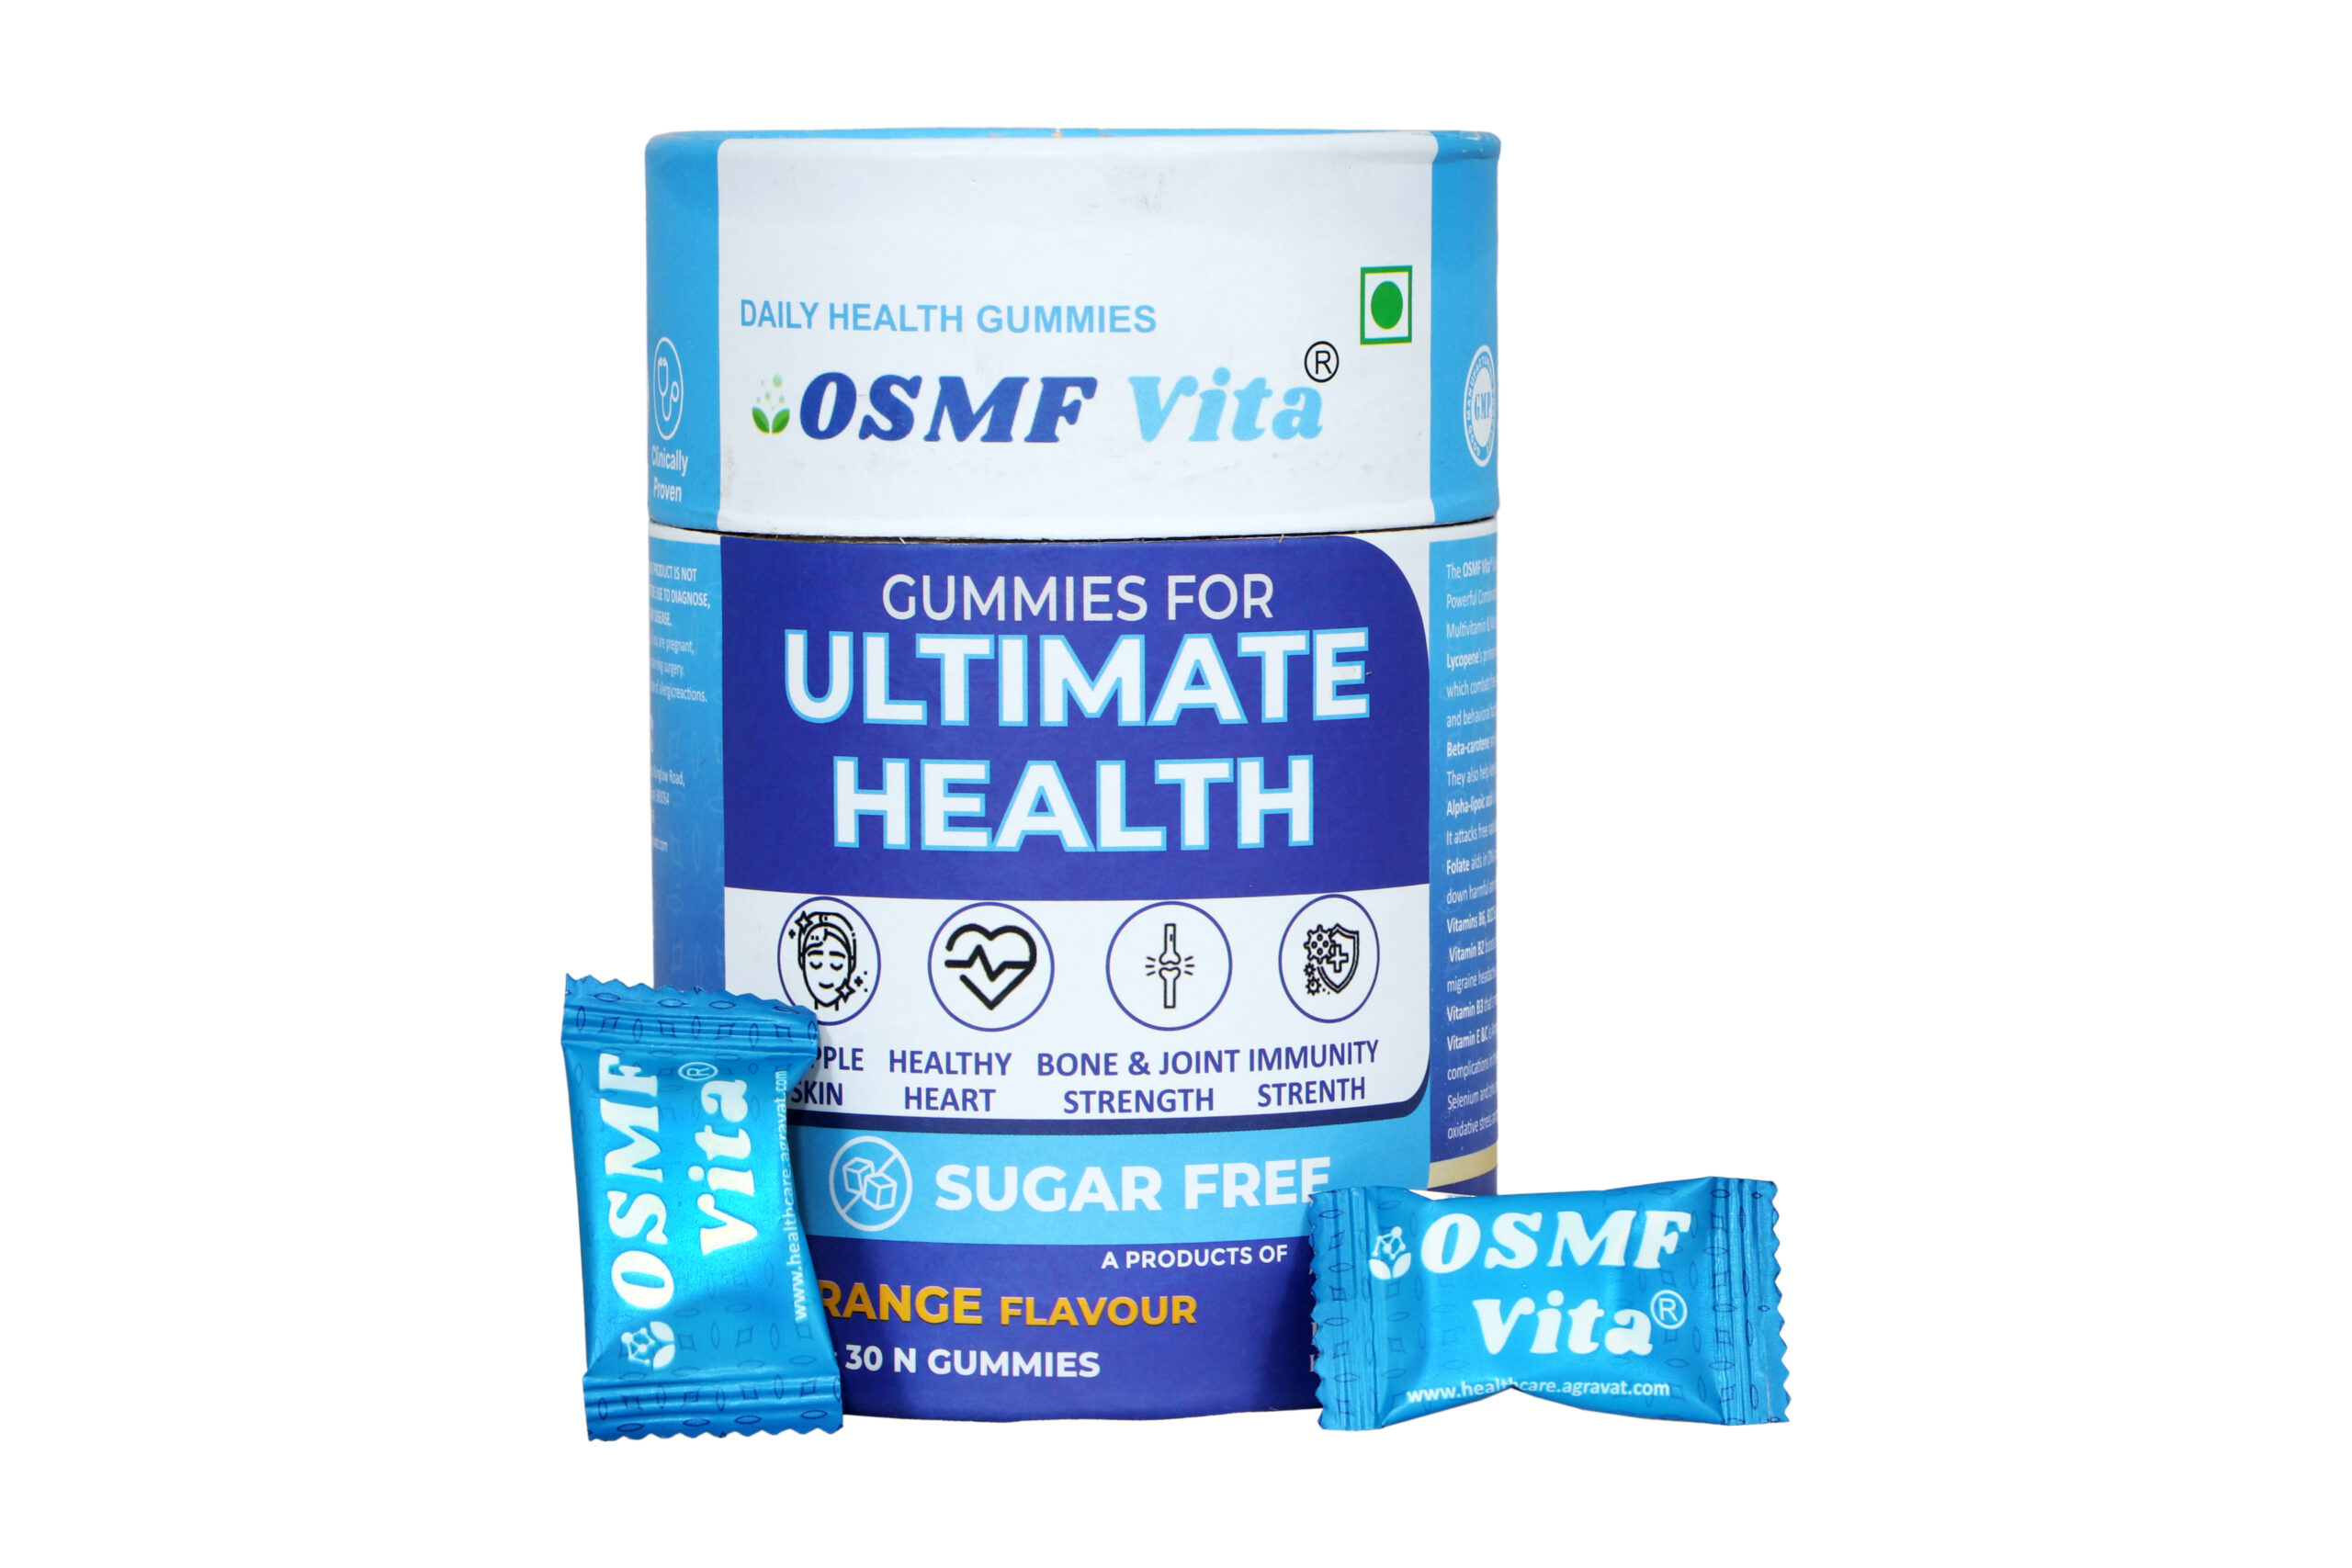 OSMF Vita Gummies For Ultimate Health Lycopene Antioxidant + Multivitamin Supplement Pilowpack front